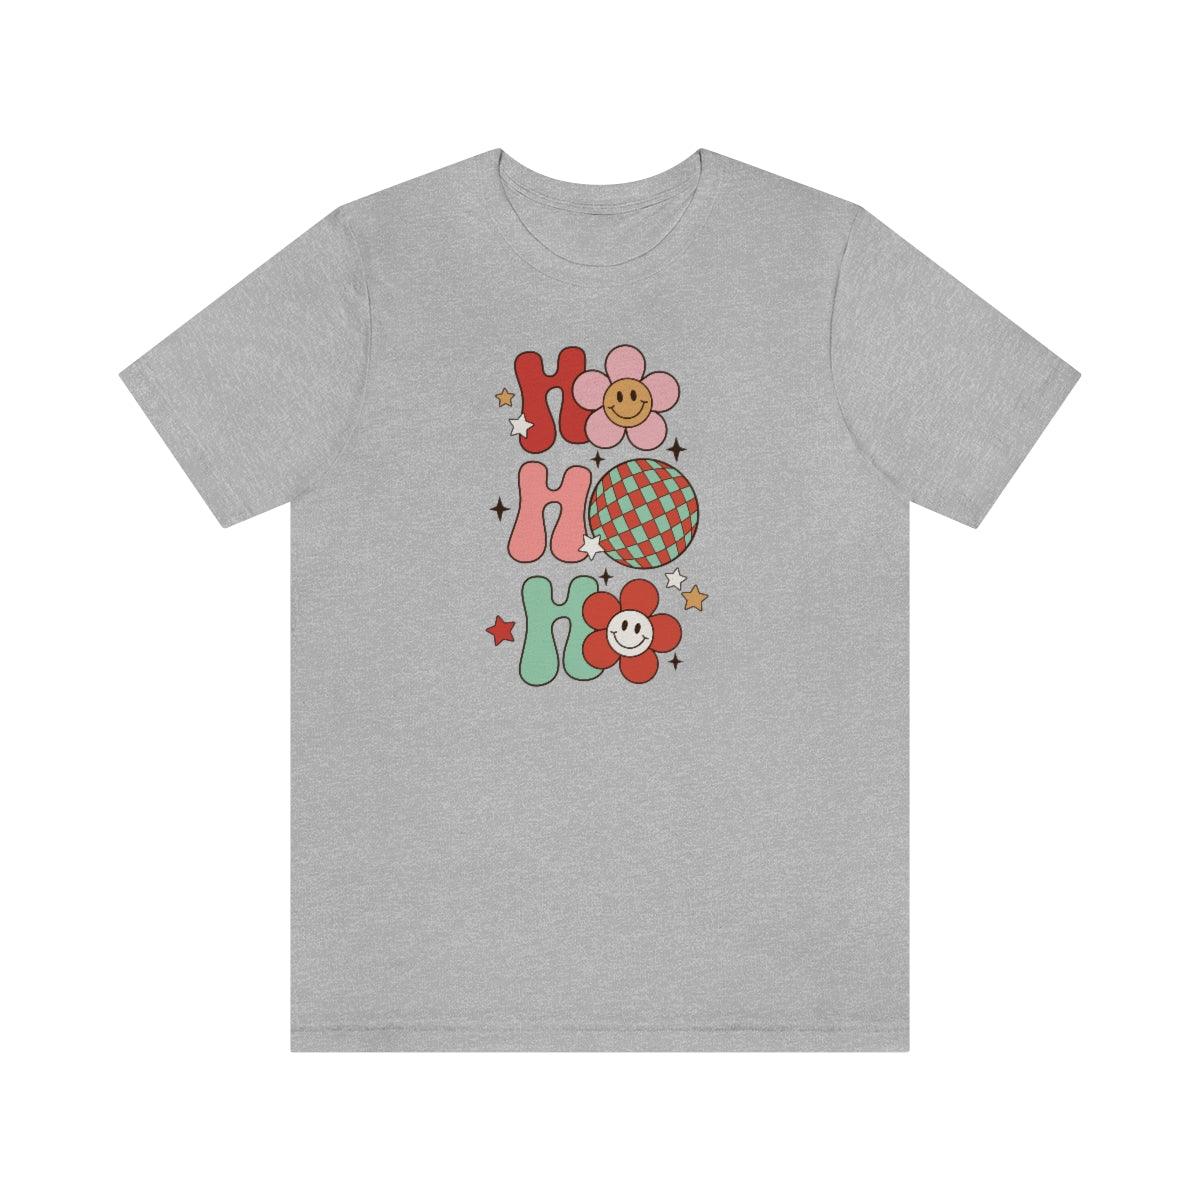 Retro Ho Ho Ho Christmas Shirt Short Sleeve Tee